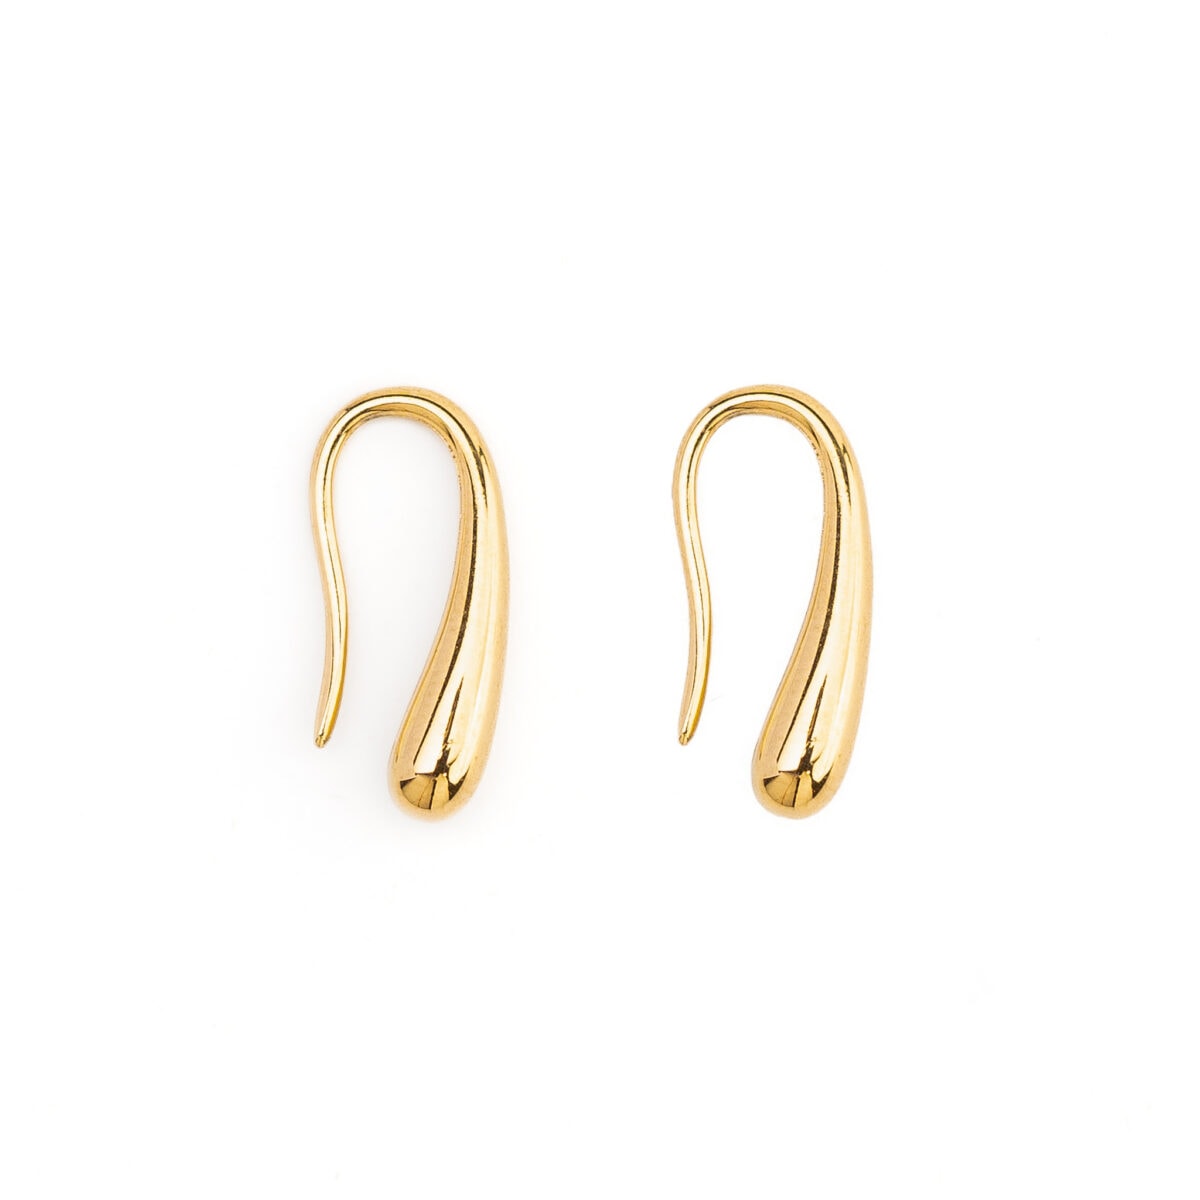 https://m.clubbella.co/product/sugar-drop-earrings/ Sugar Drop Earrings (2)